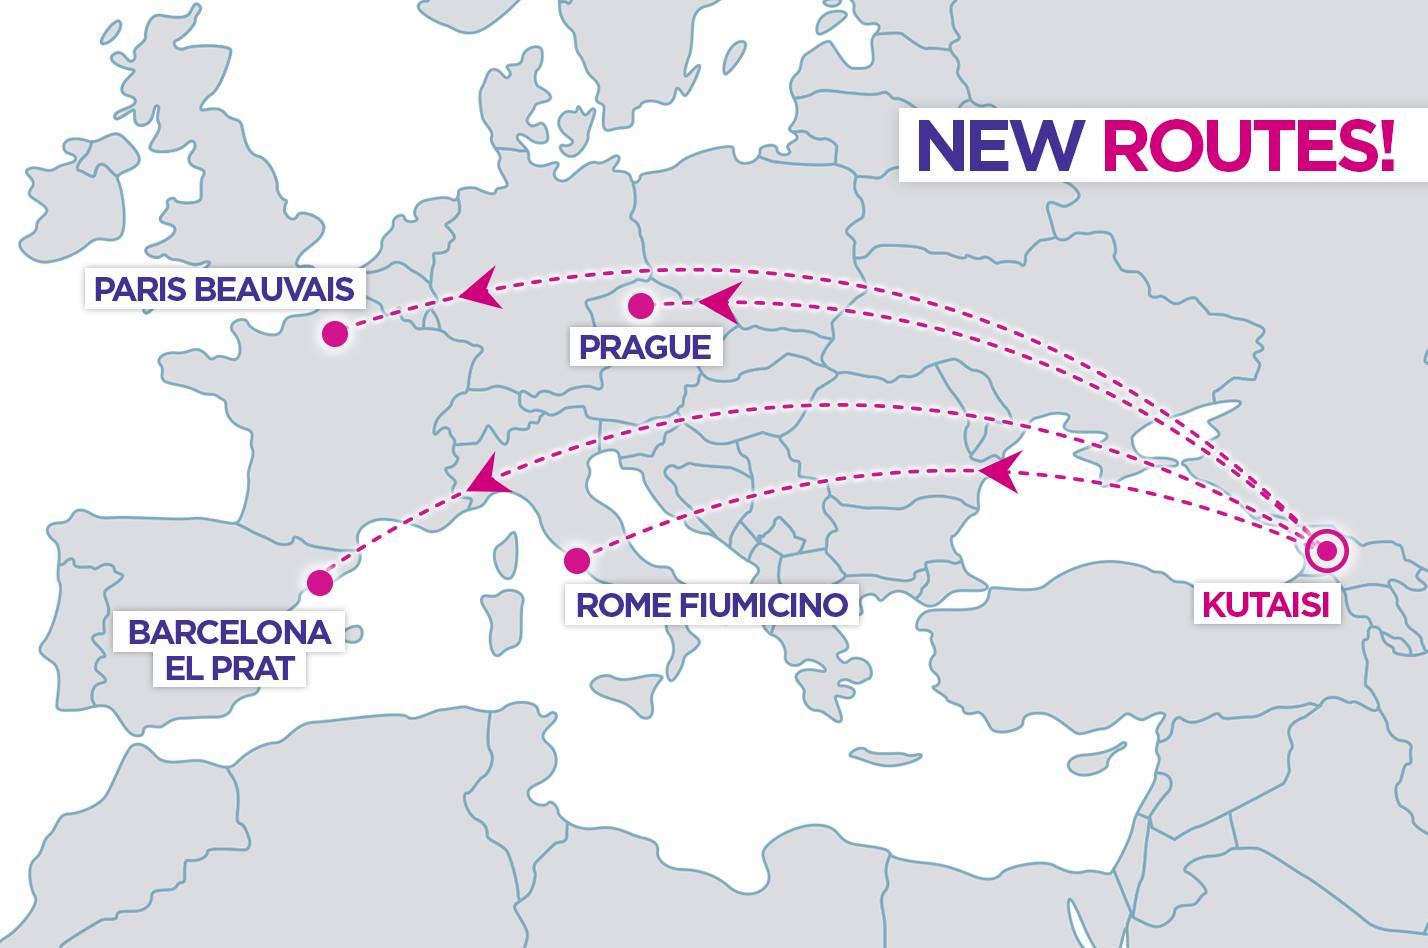 Wizz Air-ი ქუთაისიდან ბარსელონას, პრაღის, რომისა და პარიზის მიმართულებით იფრენს  